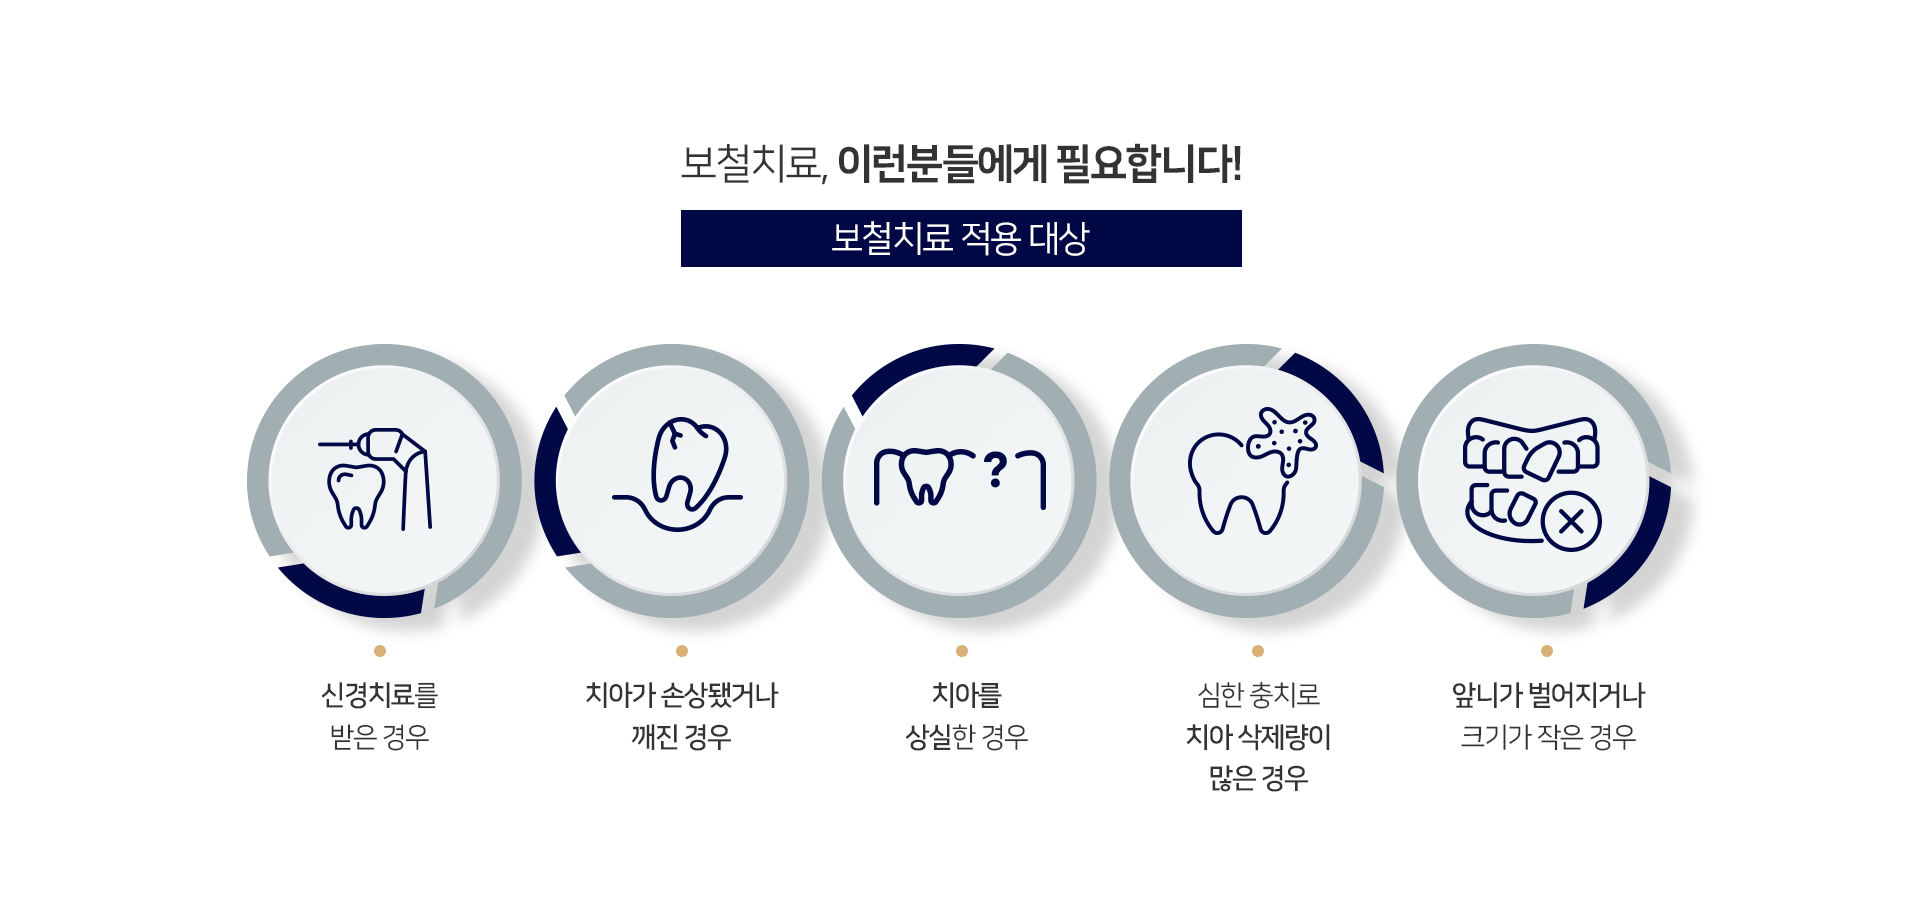 적용-대상-신경치료를-받은-경우-치아가-손상됐거나-깨진-경우-치아를-상실한-경우-심한-충치로-치아-삭제량이-많은-경우-앞니가-벌어지거나-크기가-작은-경우